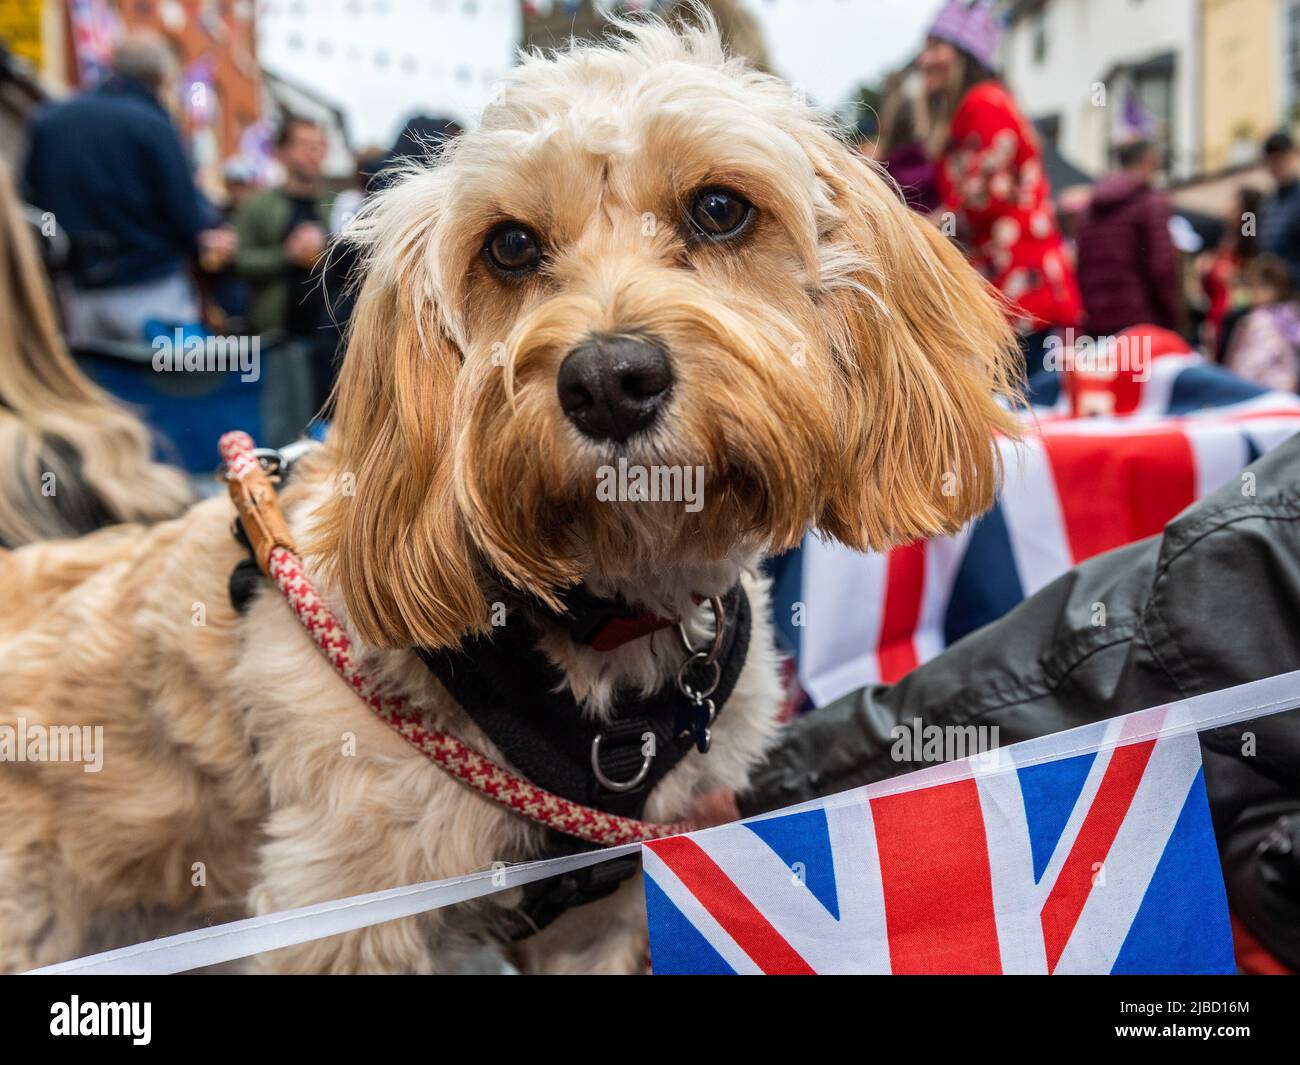 Alcester, Warwickshire, Großbritannien. 5.. Juni 2022. Hunderte von Menschen feierten heute im Rahmen der Feierlichkeiten zum Platin-Jubiläum eine große Straßenparty in Alcester, Warwickshire. 'Benji', der Hund, hatte Spaß auf der Straßenparty. Quelle: AG News/Alamy Live News Stockfoto